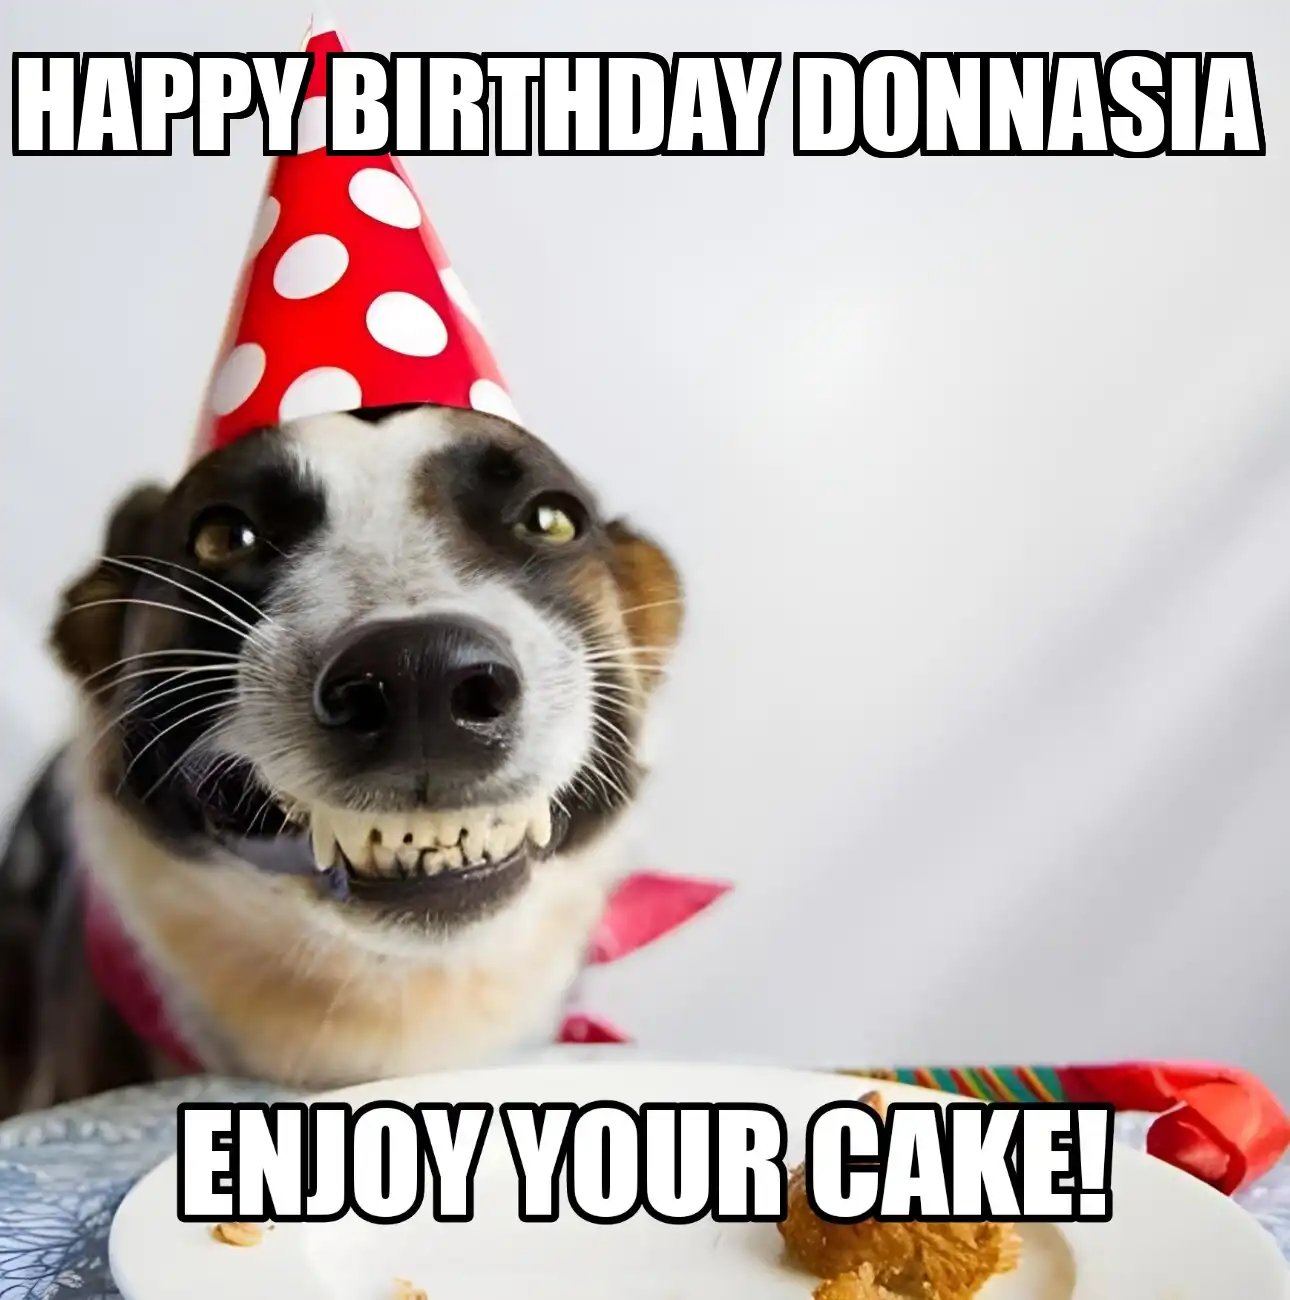 Happy Birthday Donnasia Enjoy Your Cake Dog Meme